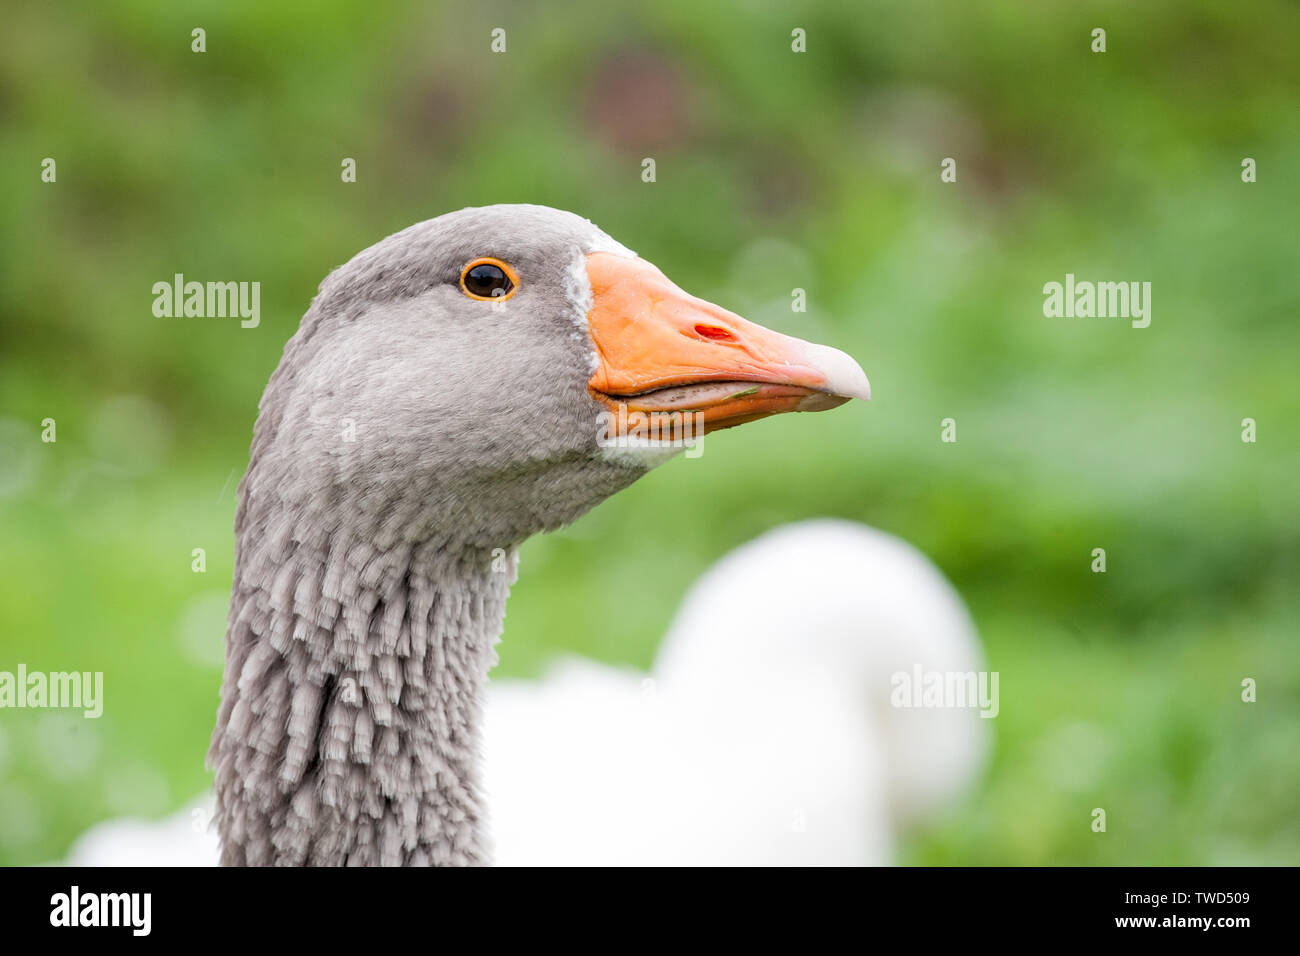 Grey Goose head closeup vista sobre la hierba verde de fondo de verano al aire libre Foto de stock